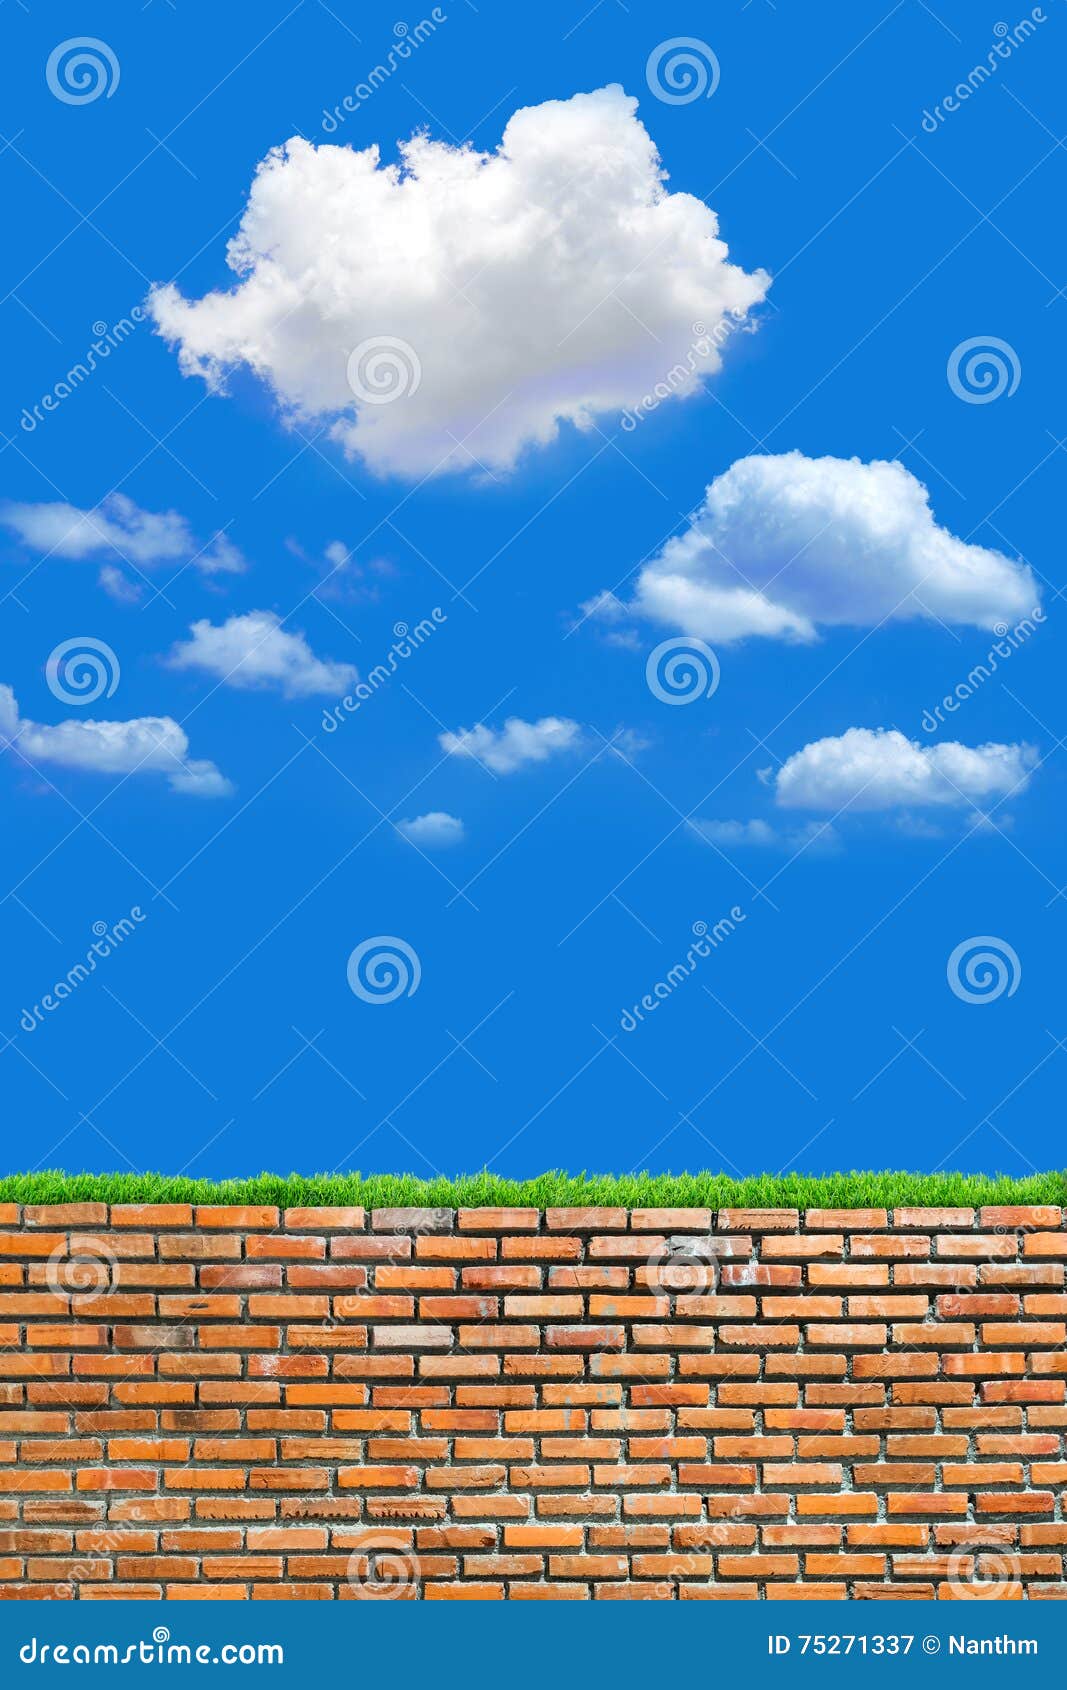 Tường gạch đỏ cũ với nền trời xanh mây và cỏ xanh sẽ kích thích trí tưởng tượng của bạn! Điều tuyệt vời nhất là thấy sự kết hợp hài hòa giữa hiện đại và cổ điển. Bức ảnh sẽ giúp bạn thấy nét thanh mảnh của tường và sự tươi vui của bầu trời xanh mây.